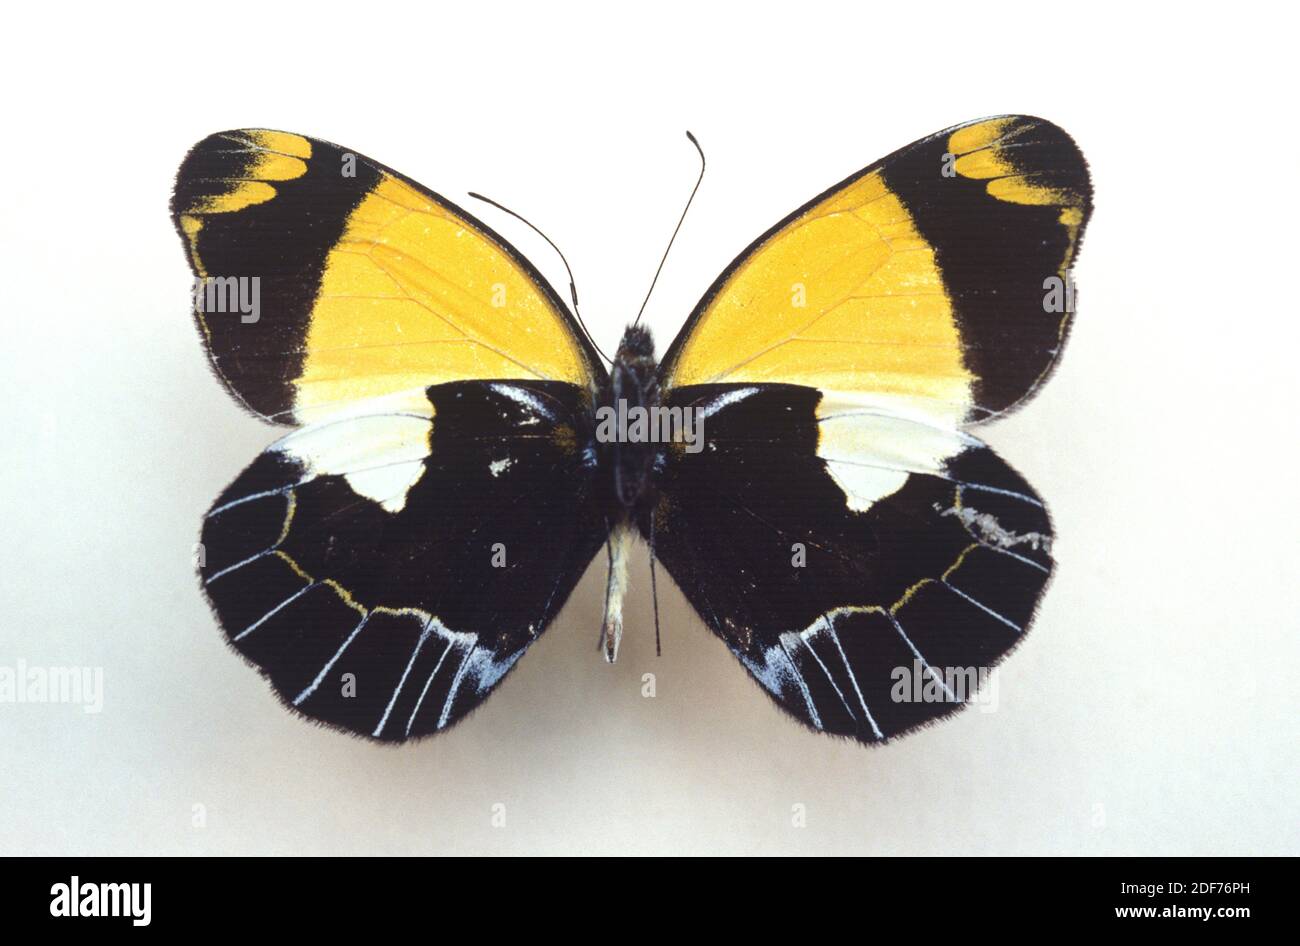 Delias niepelti es una mariposa nativa de Nueva Guinea. Superficie ventral. Foto de stock